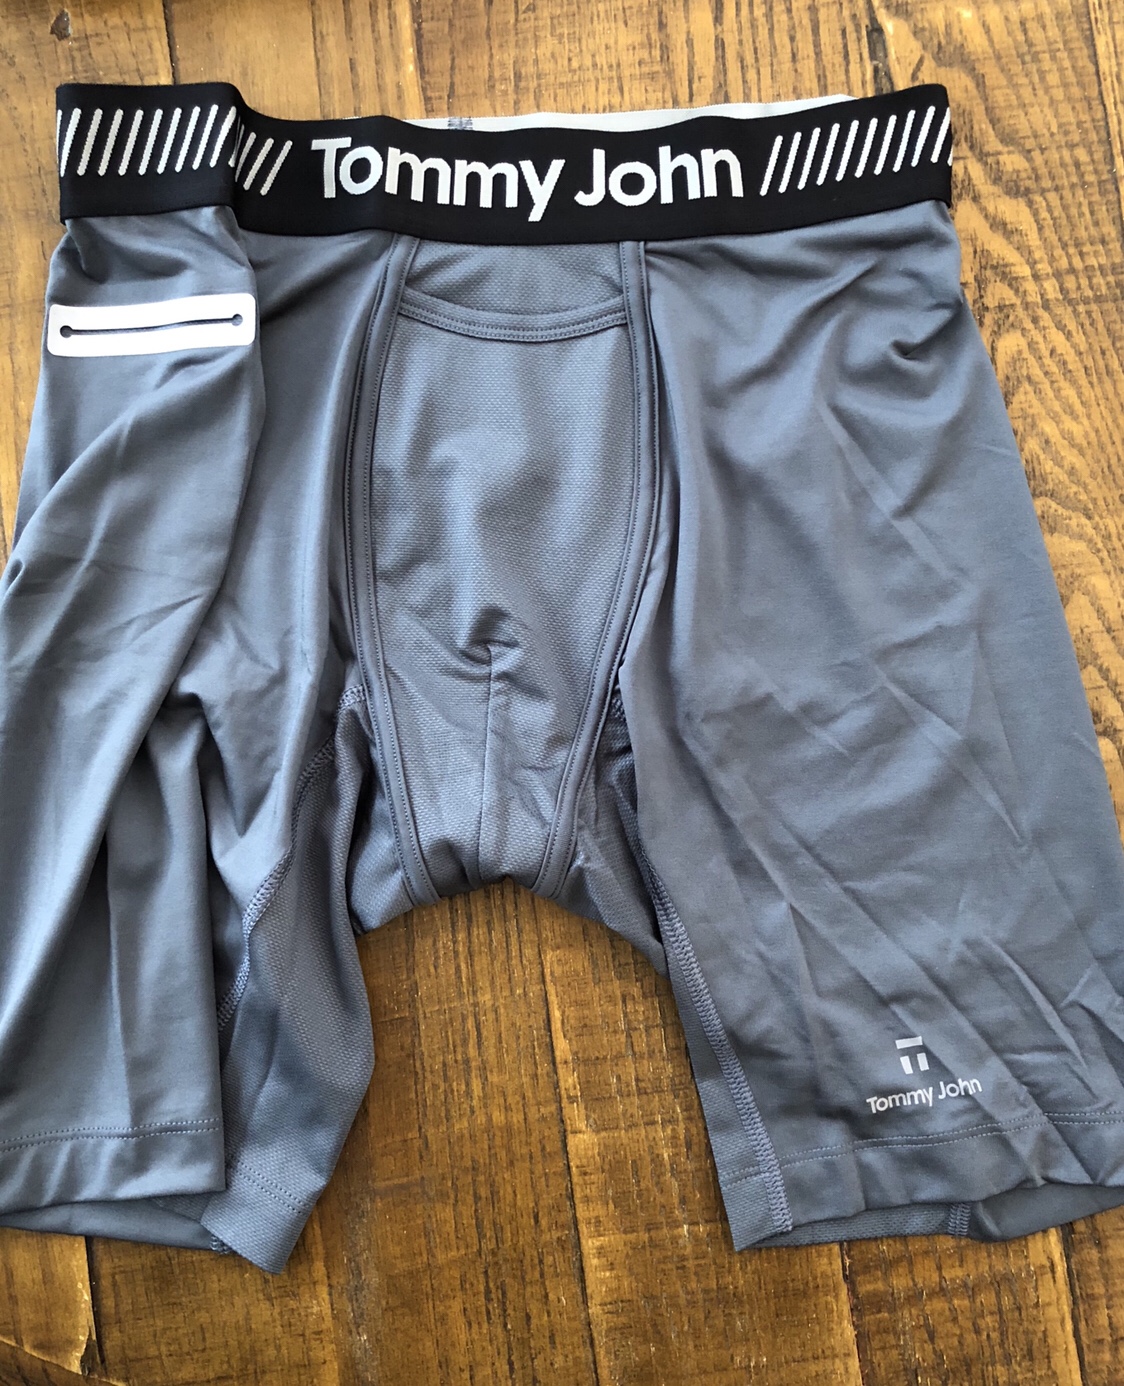 tommy john underwear pouch